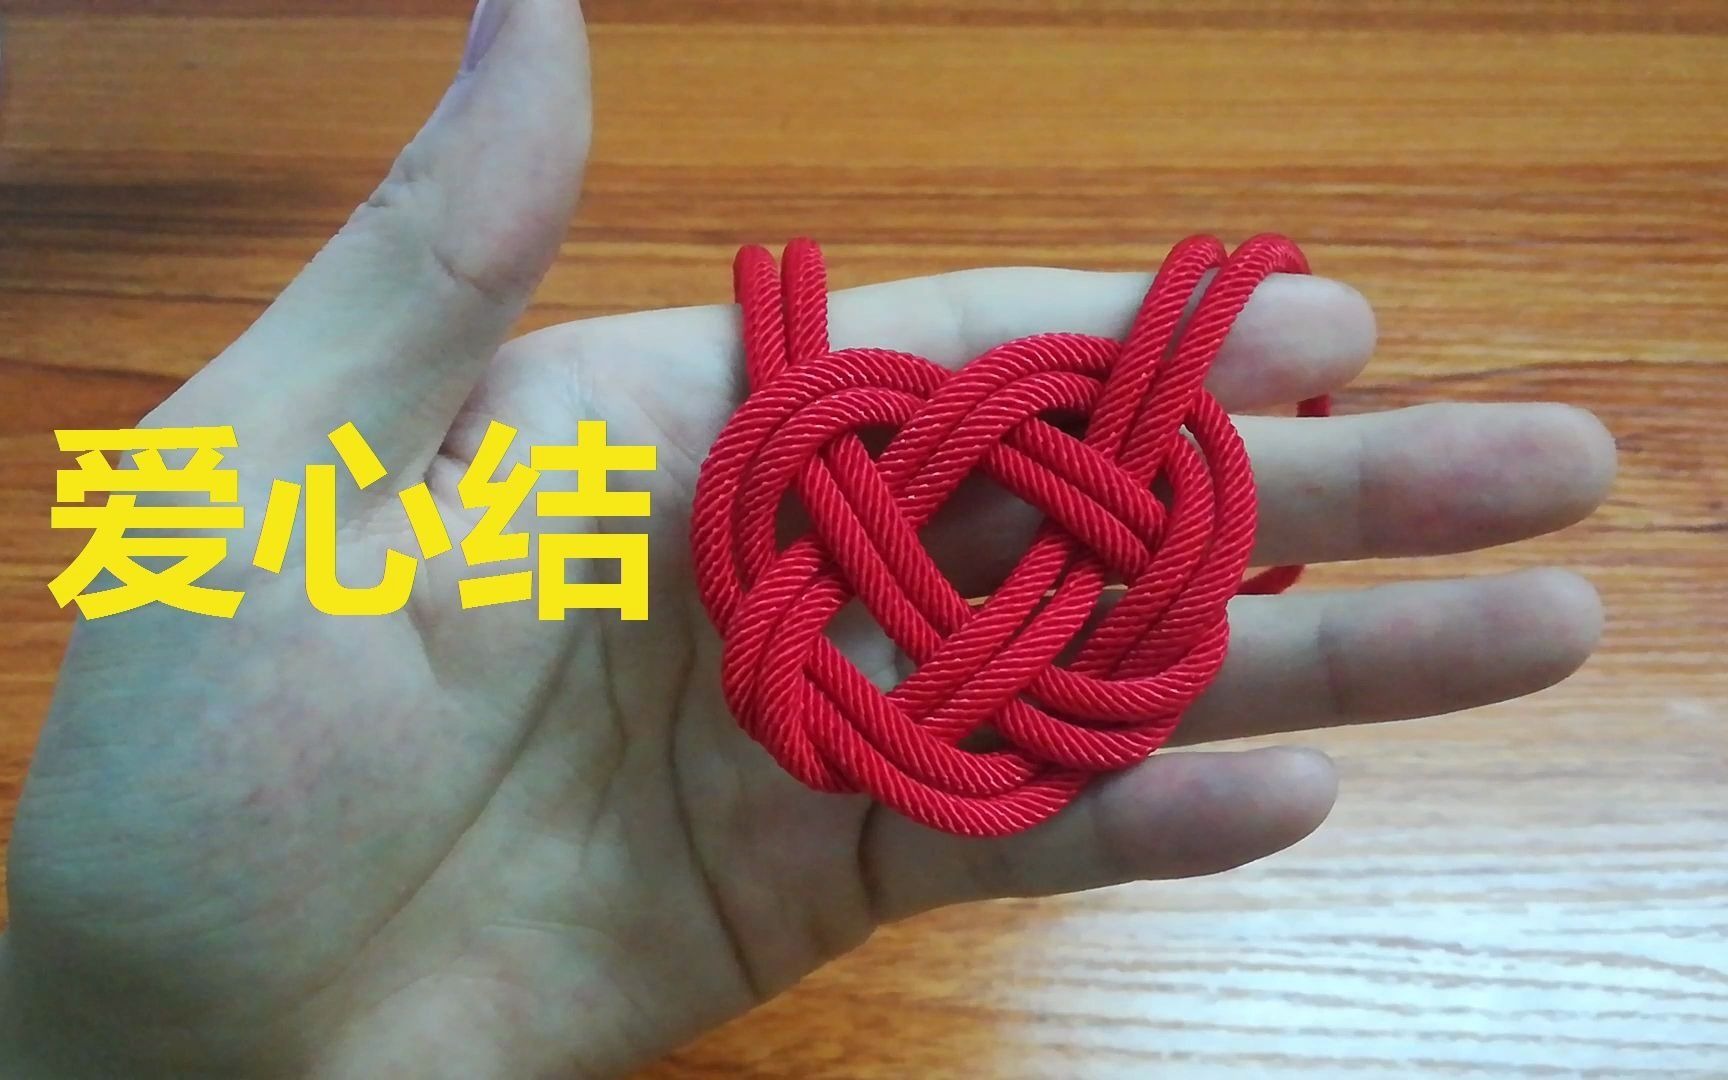 编绳教学:爱心结,学会这个编绳方法!适合用在装饰品上使用!